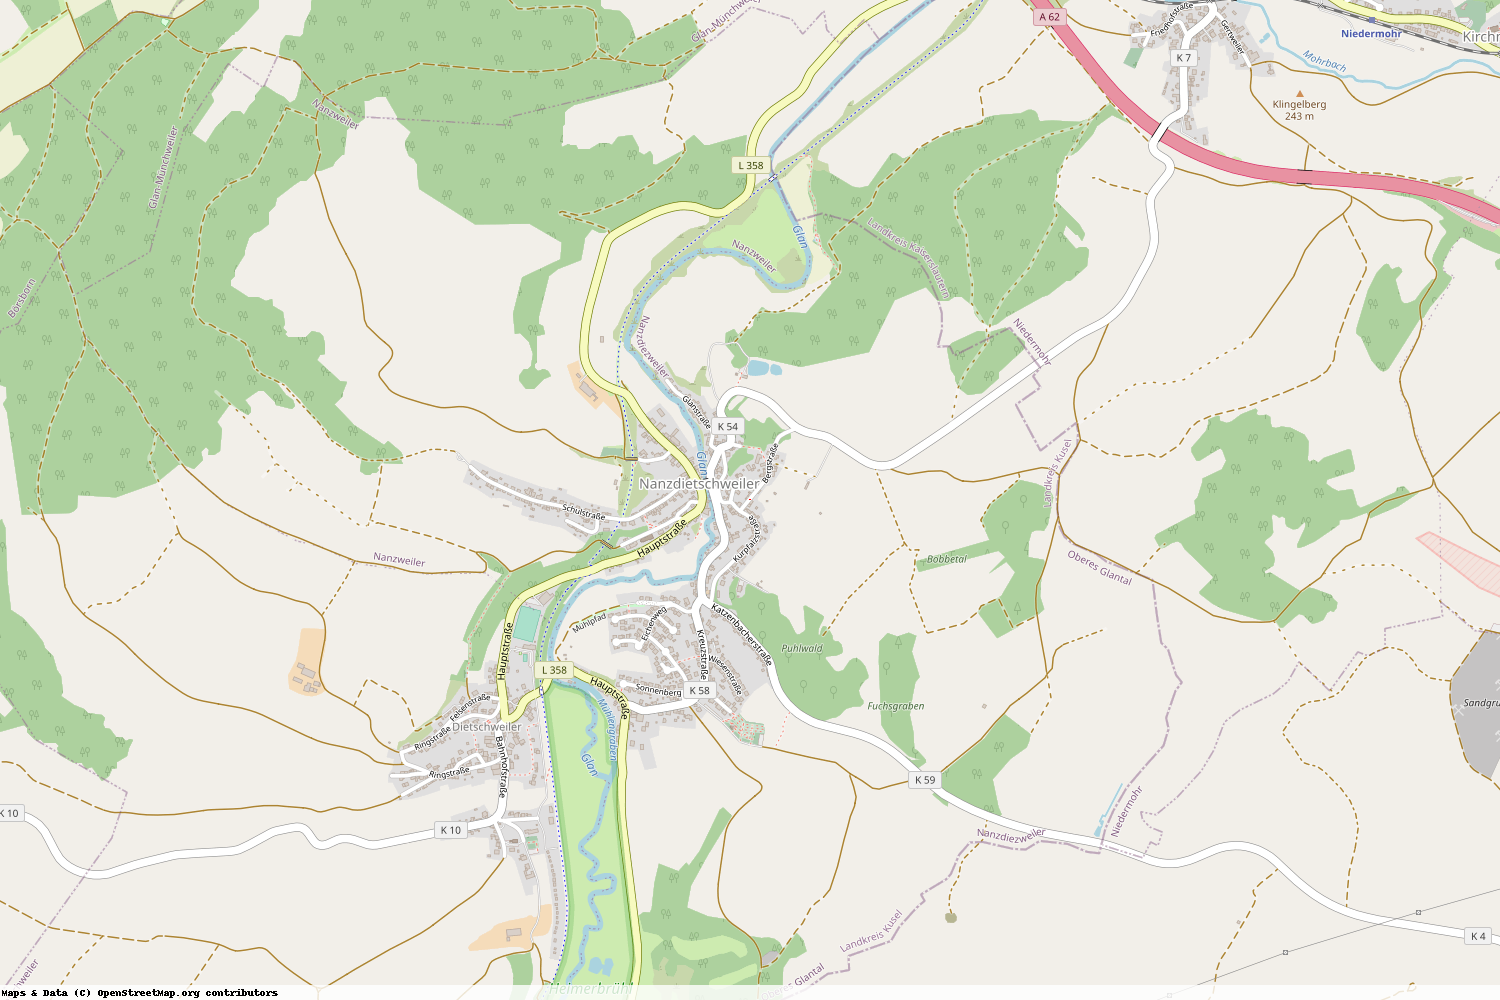 Ist gerade Stromausfall in Rheinland-Pfalz - Kusel - Nanzdietschweiler?